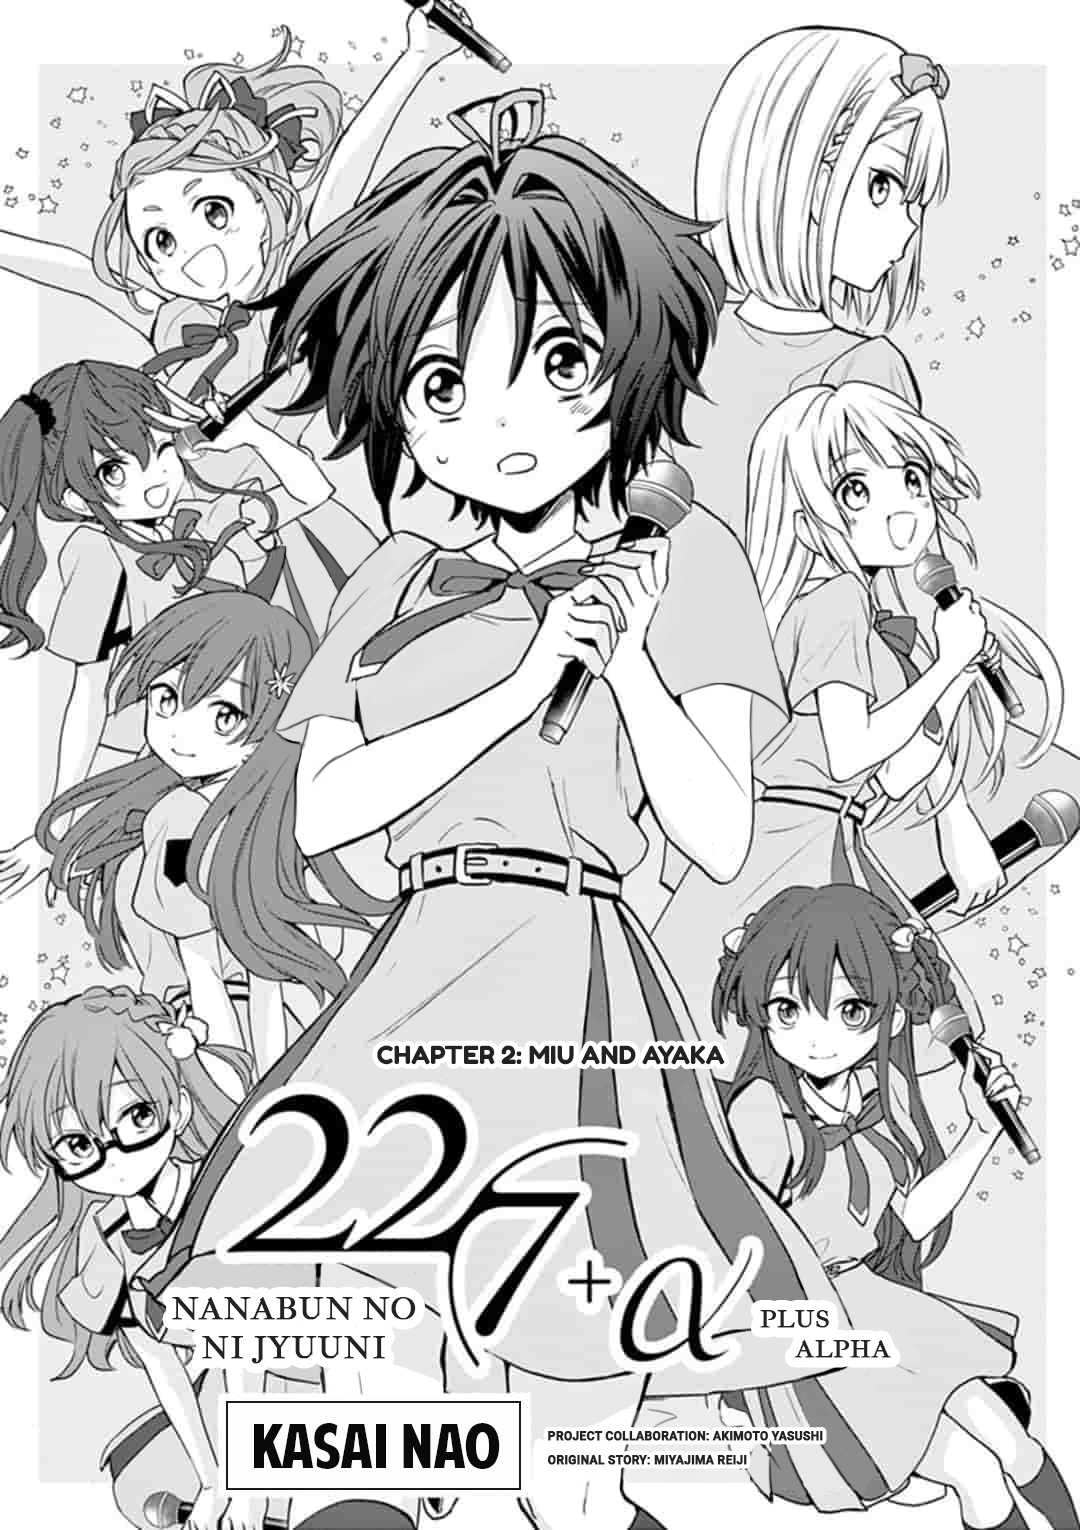 22/7 (Nanabun No Nijyuuni) +Α - Page 1